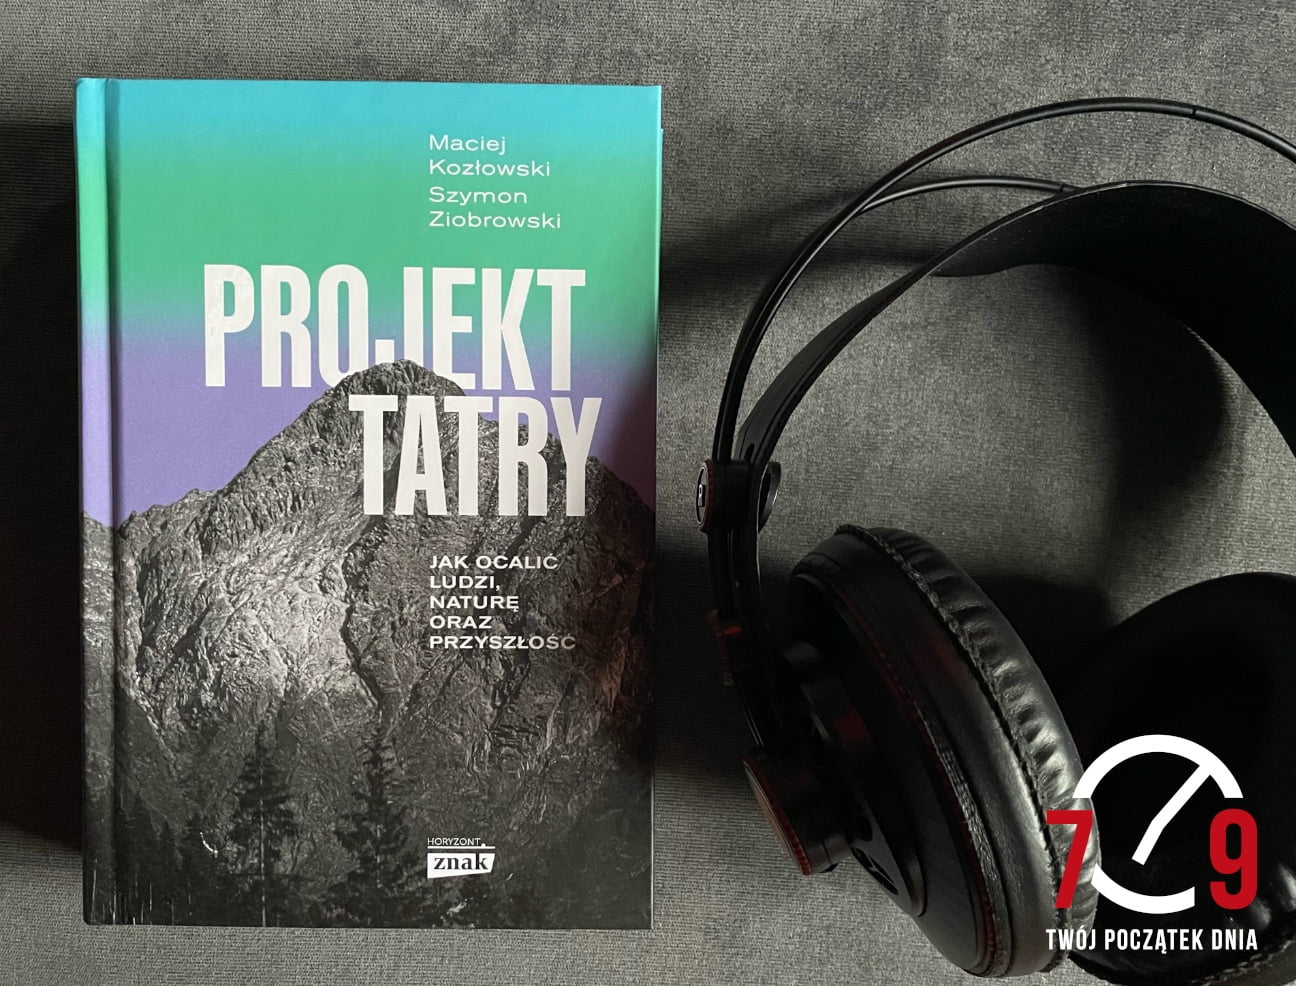 Maciej Kozłowski – książka “Projekt Tatry”